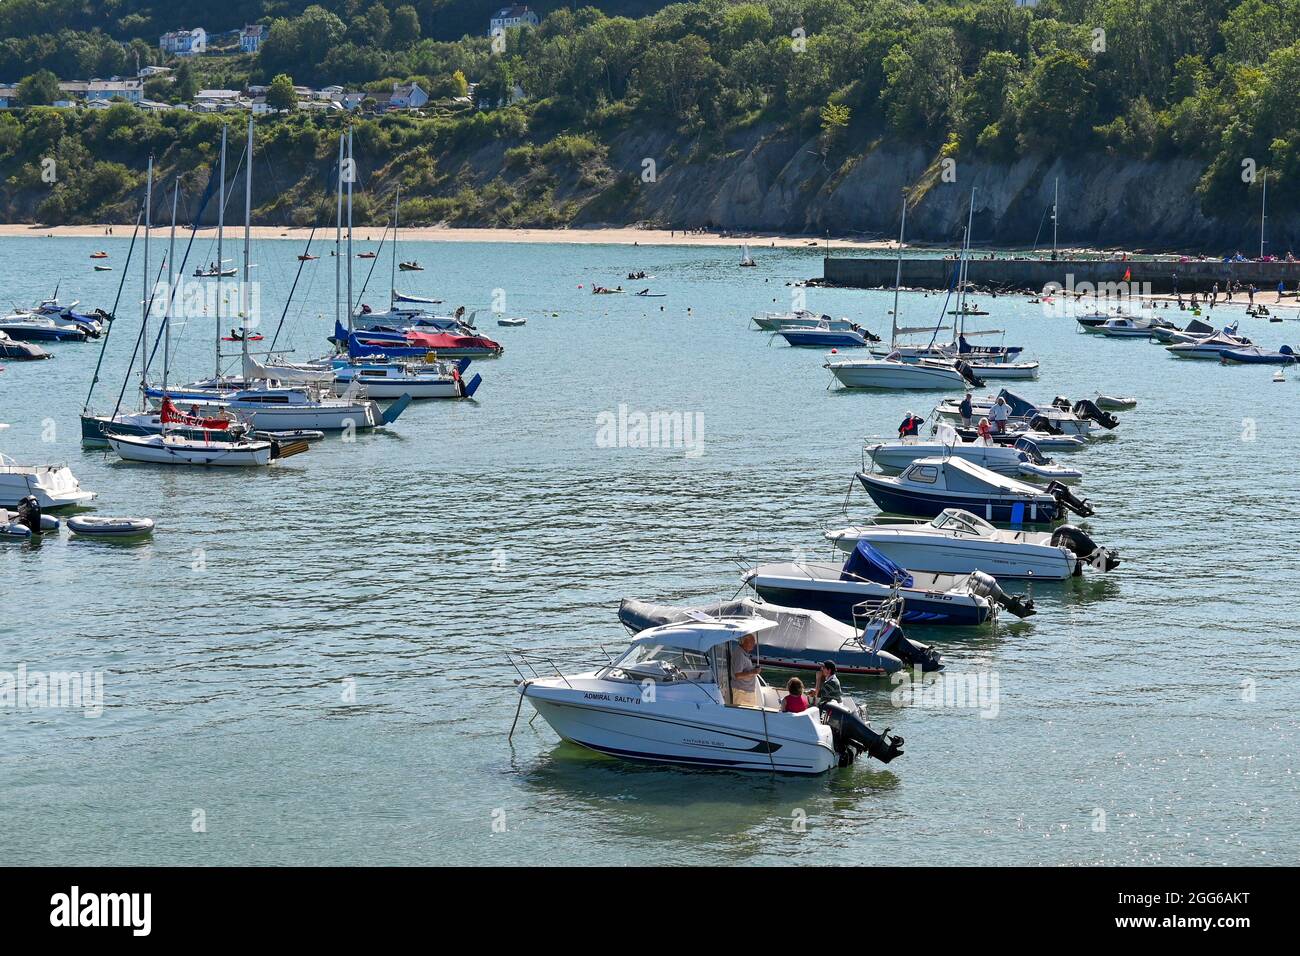 Der Hafen von Newquay in Wales sieht an einem Sommertag fantastisch aus Stockfoto